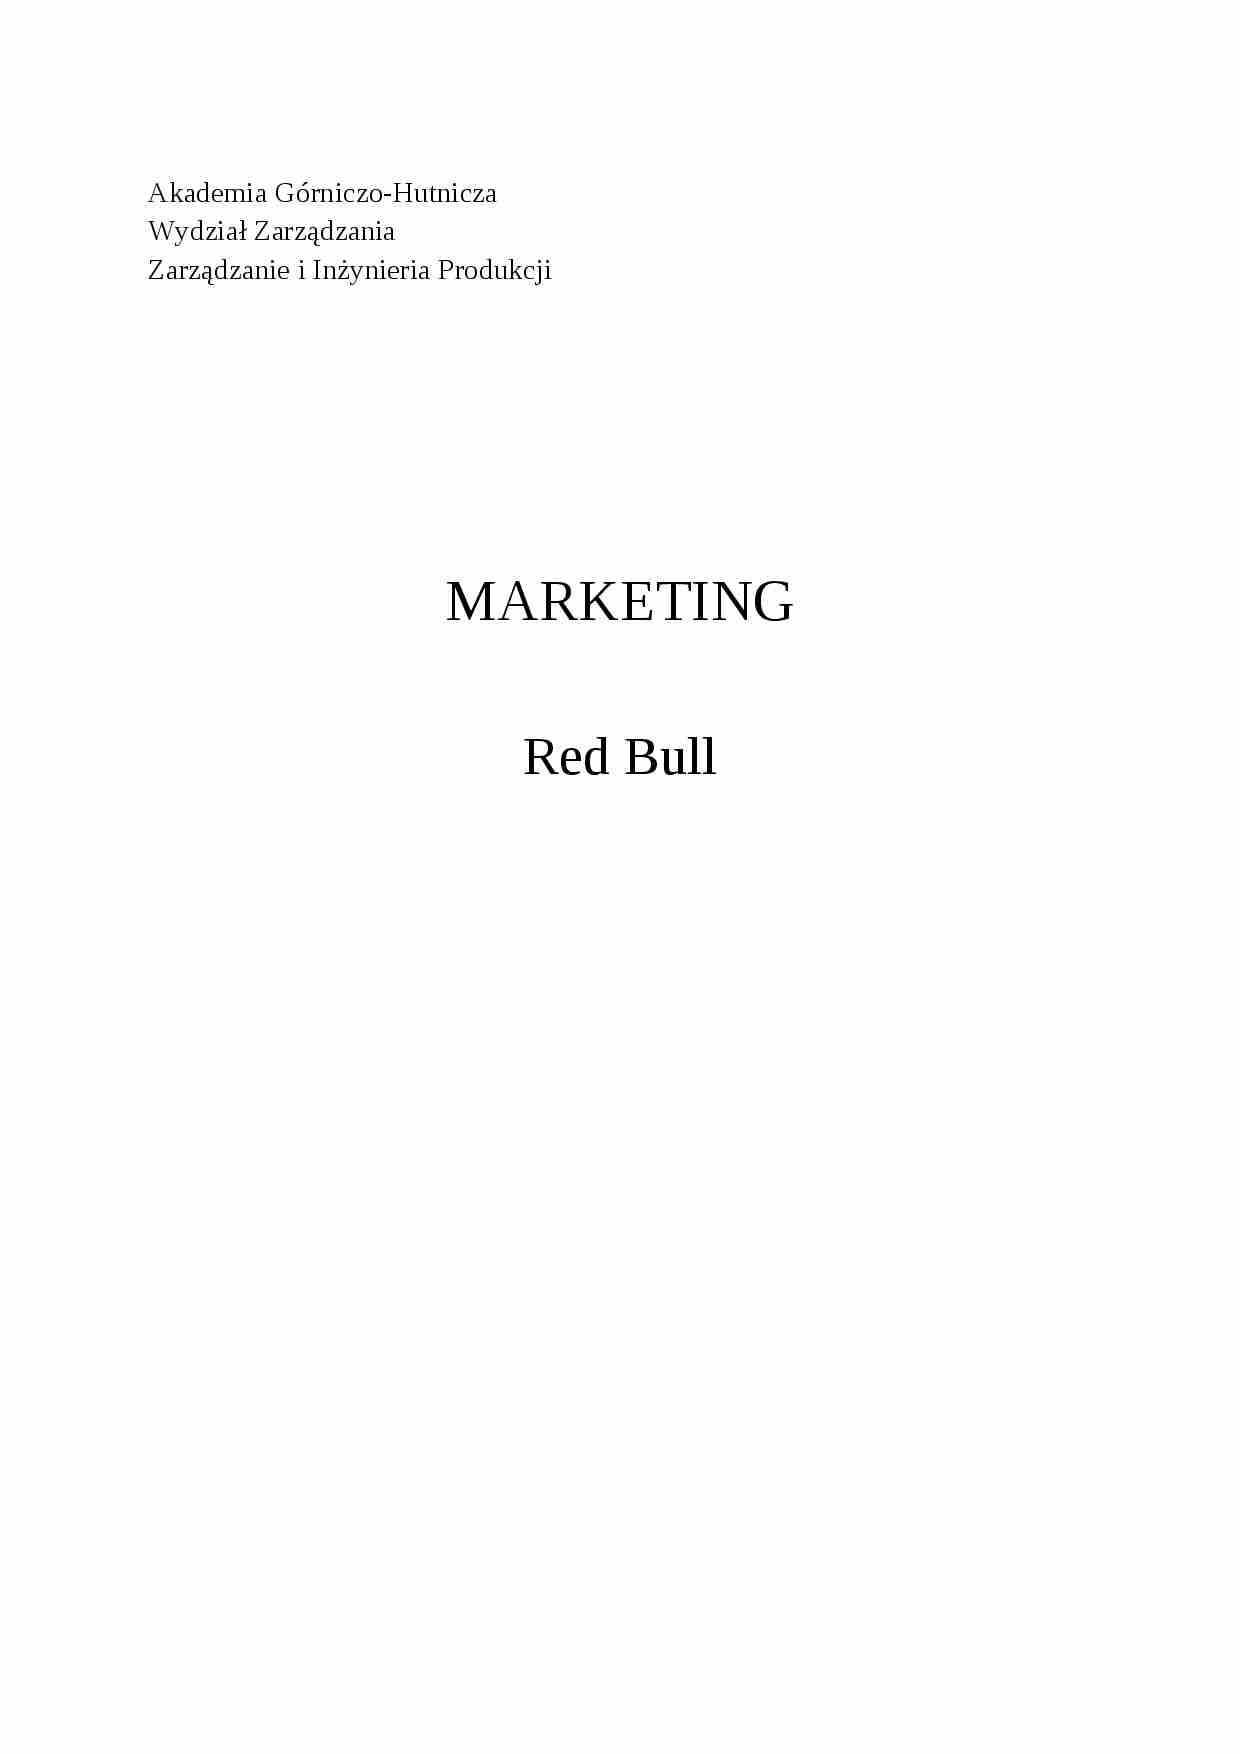 Firma Red Bull - projekt z marketingu - strona 1